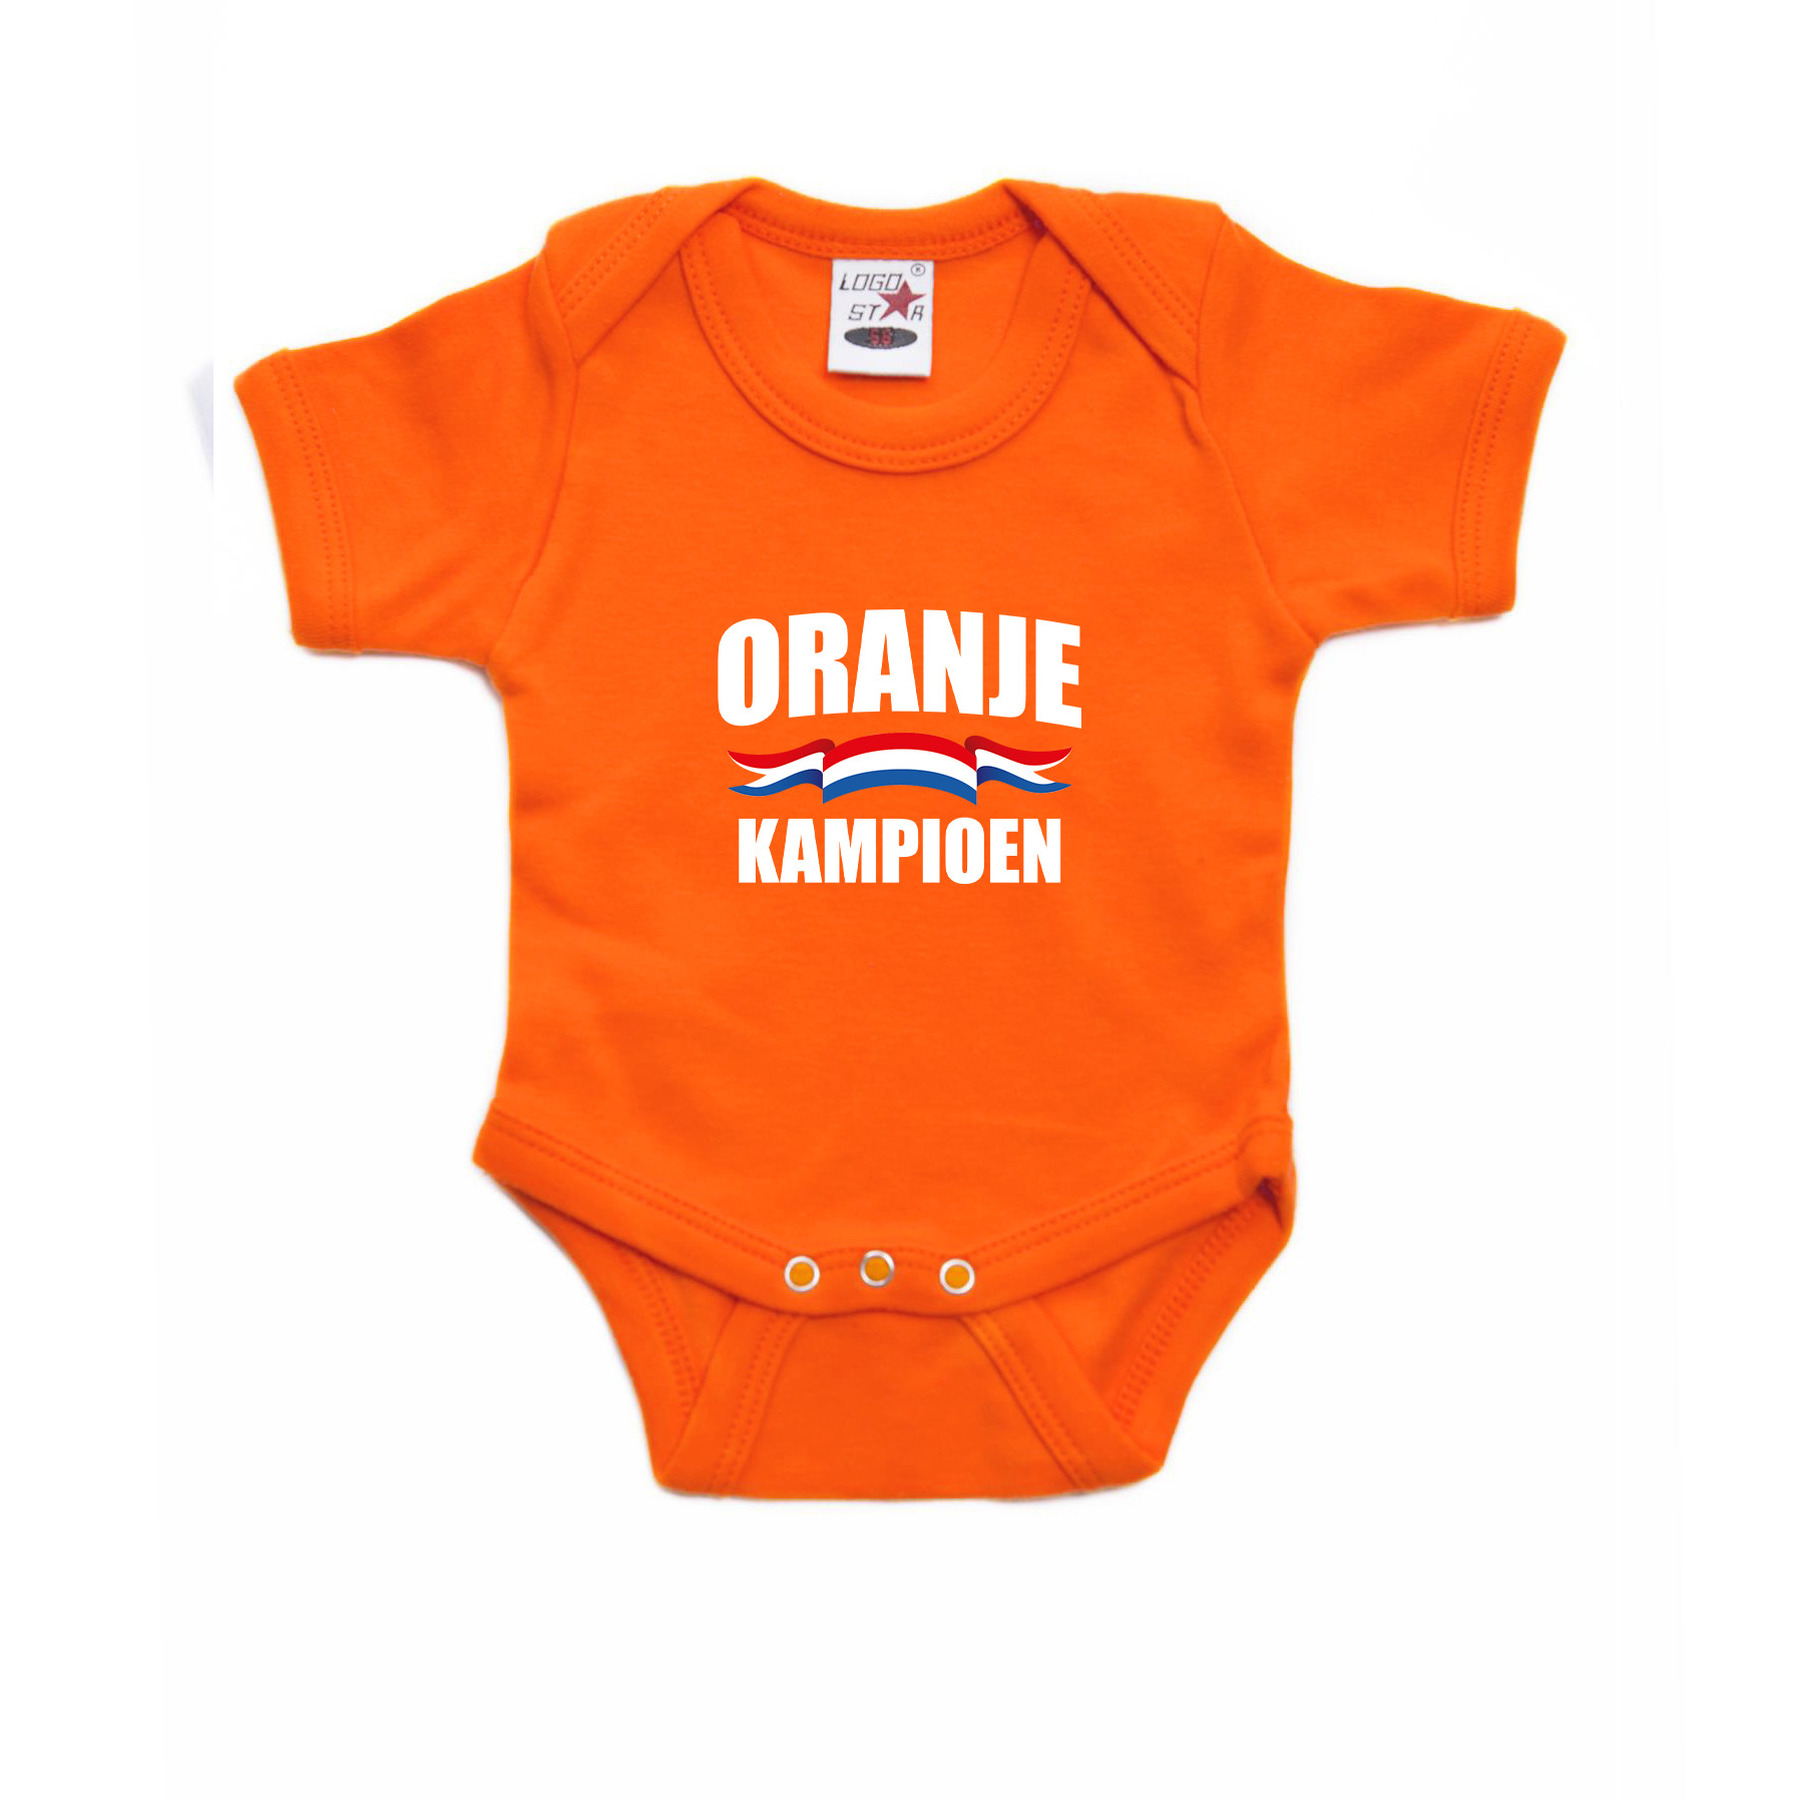 Oranje kampioen romper voor babys Holland-Nederland supporter